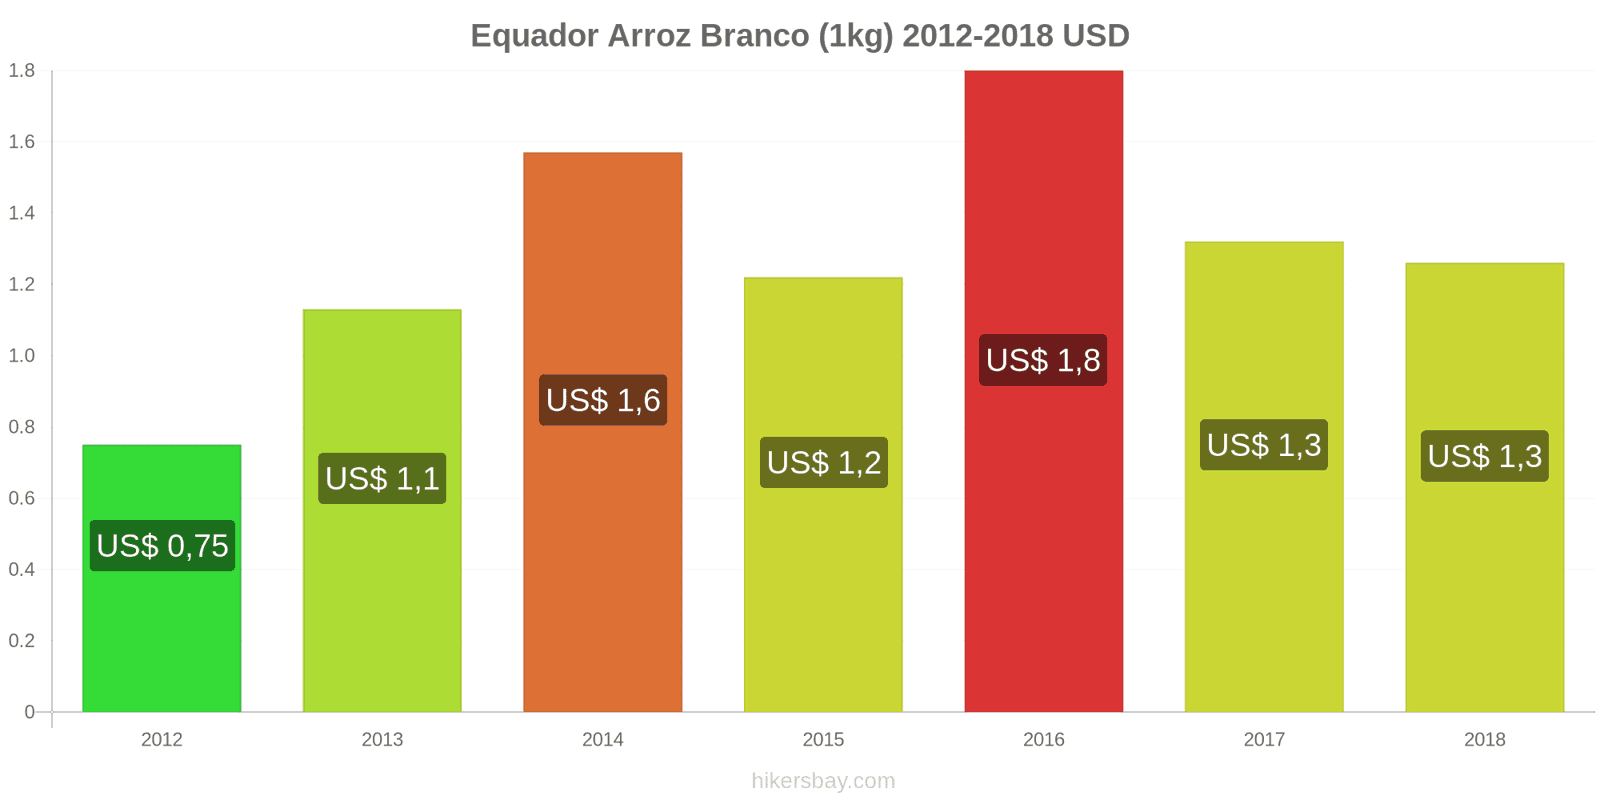 Equador mudanças de preços Quilo de arroz branco hikersbay.com